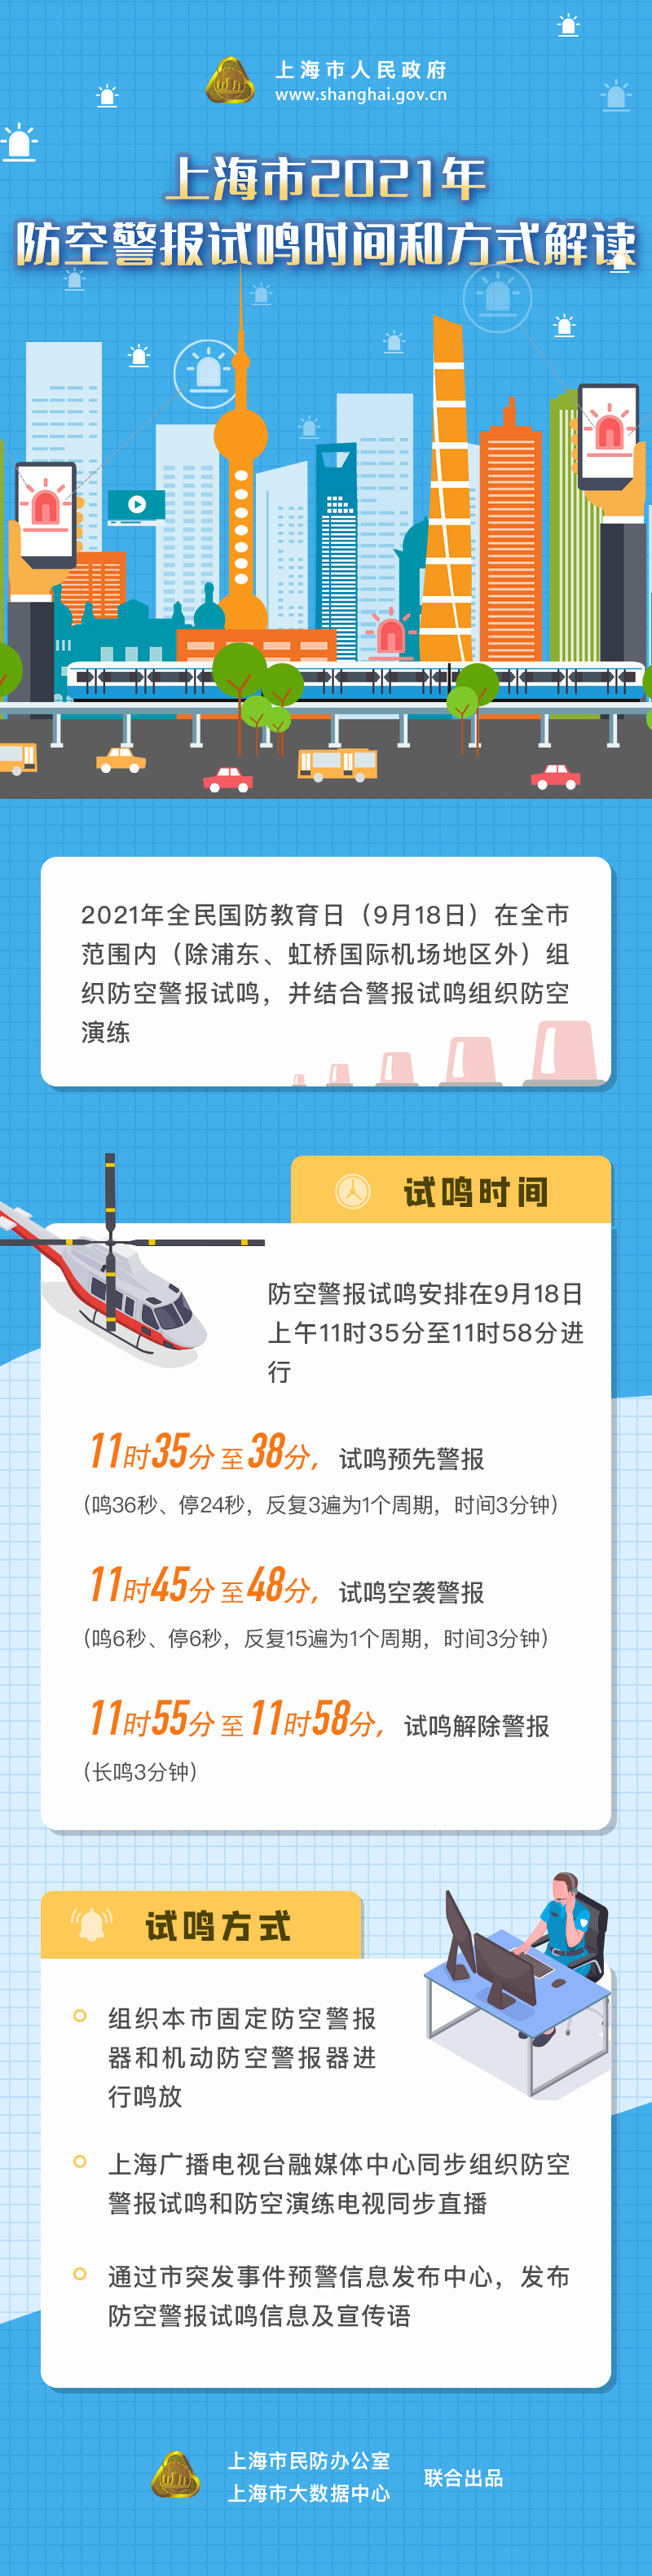 上海市2021年防空警报试鸣时间和方式解读.jpg